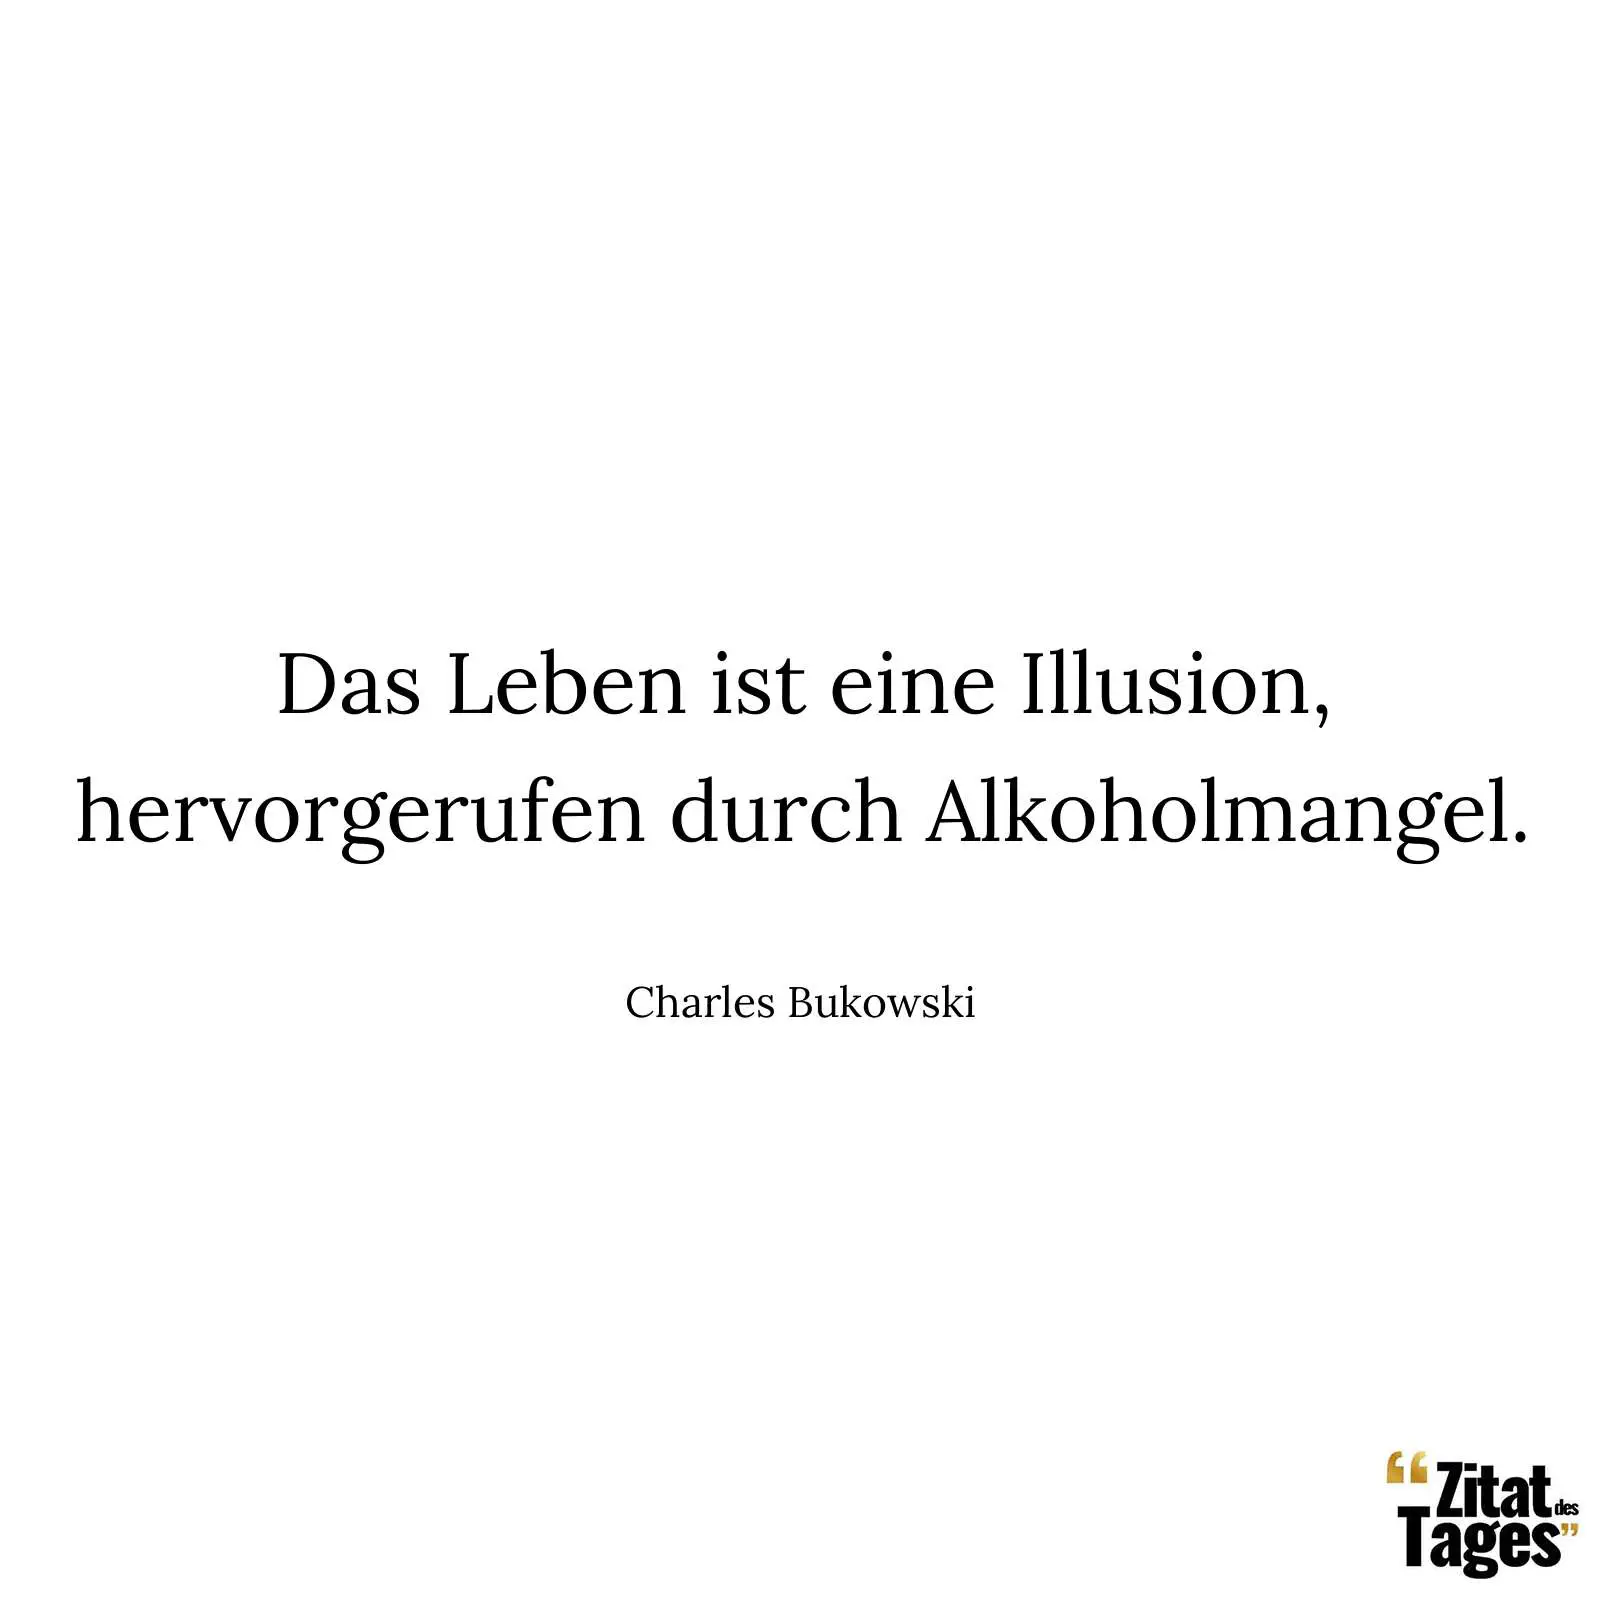 Das Leben ist eine Illusion, hervorgerufen durch Alkoholmangel. - Charles Bukowski